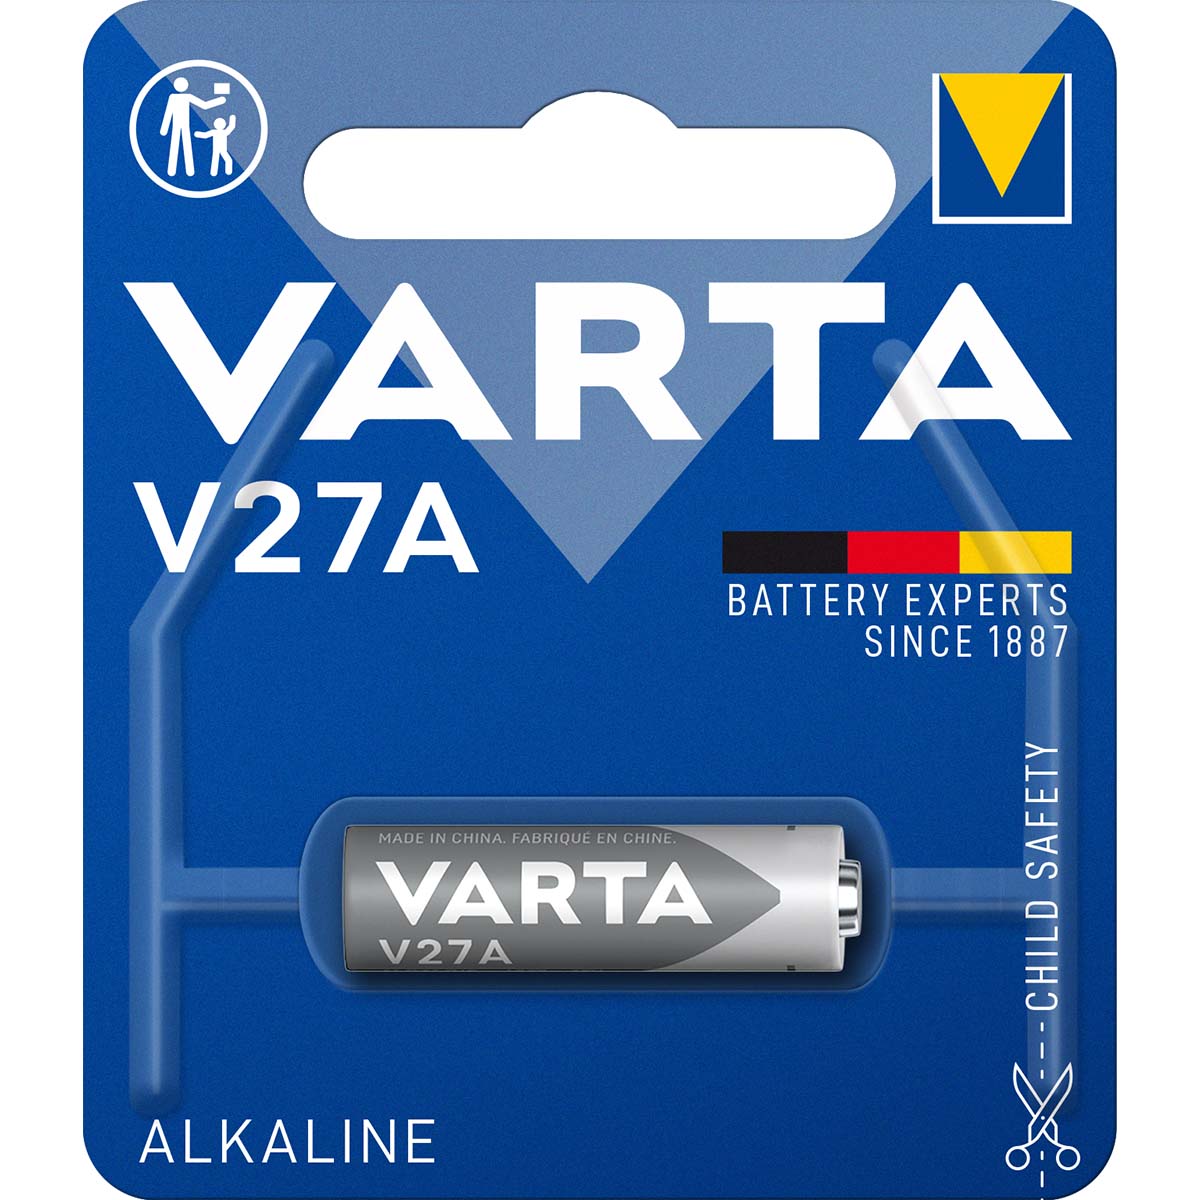 Alkaline Batterie 27A | 12 V | 19 mAh | 1-Blister